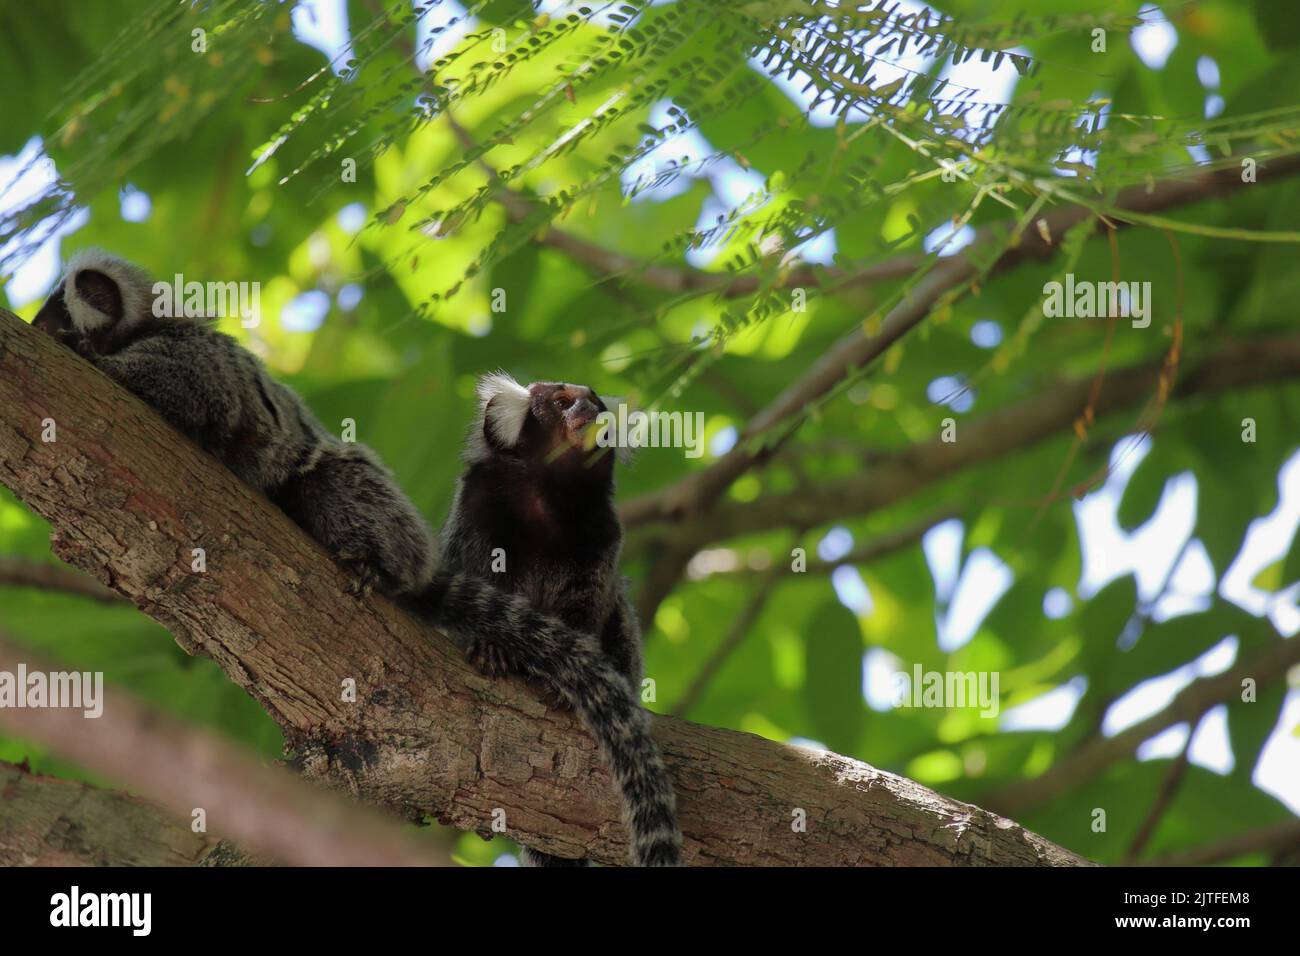 Petit singe originaire des régions de la forêt atlantique vu au-dessus d'un mur près de Maceio, Alagoas, Brésil. Également connu sous le nom de Mico Estrela. Banque D'Images